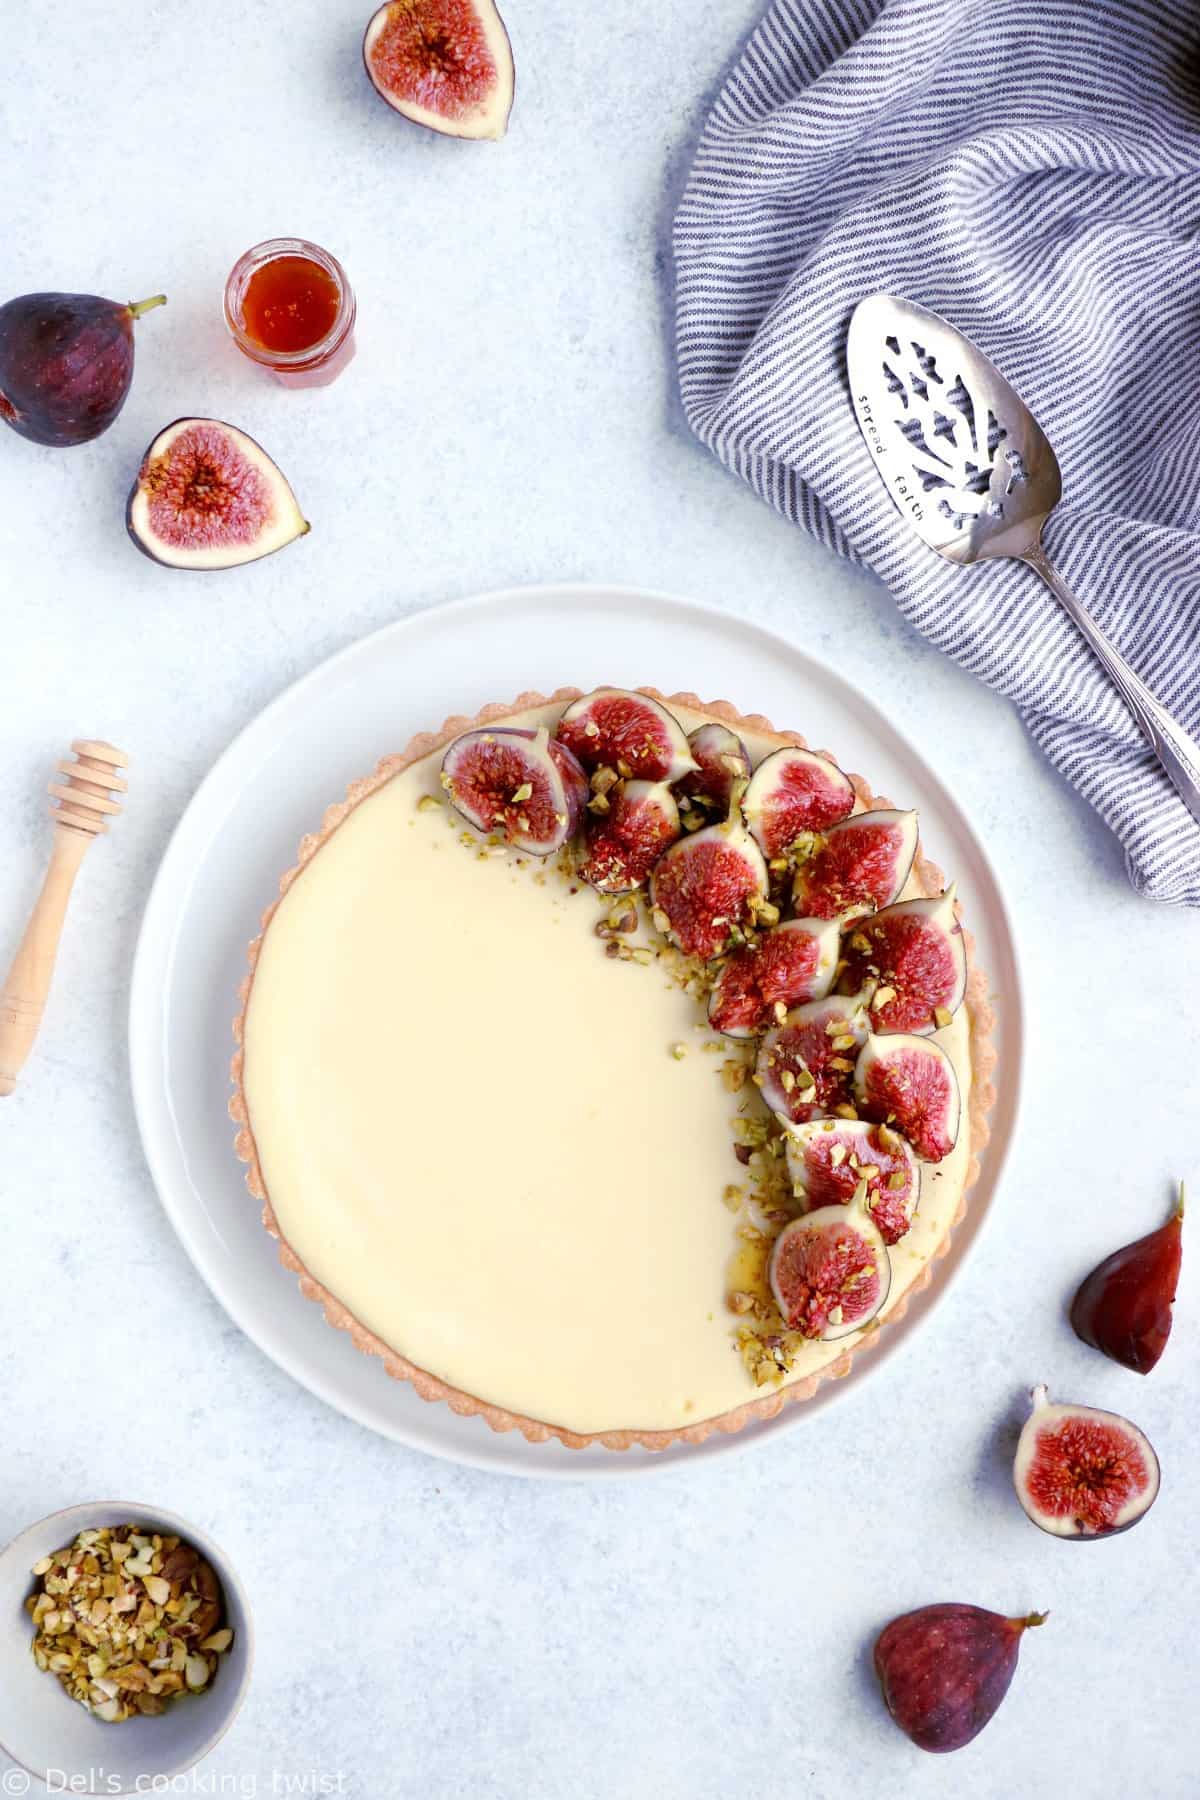 Une tarte cheesecake aux figues, chèvre et miel que l'on croirait tout droit sortie de chez la pâtissier et qui est pourtant toute simple à réaliser, avec de bonnes figues fraîches.